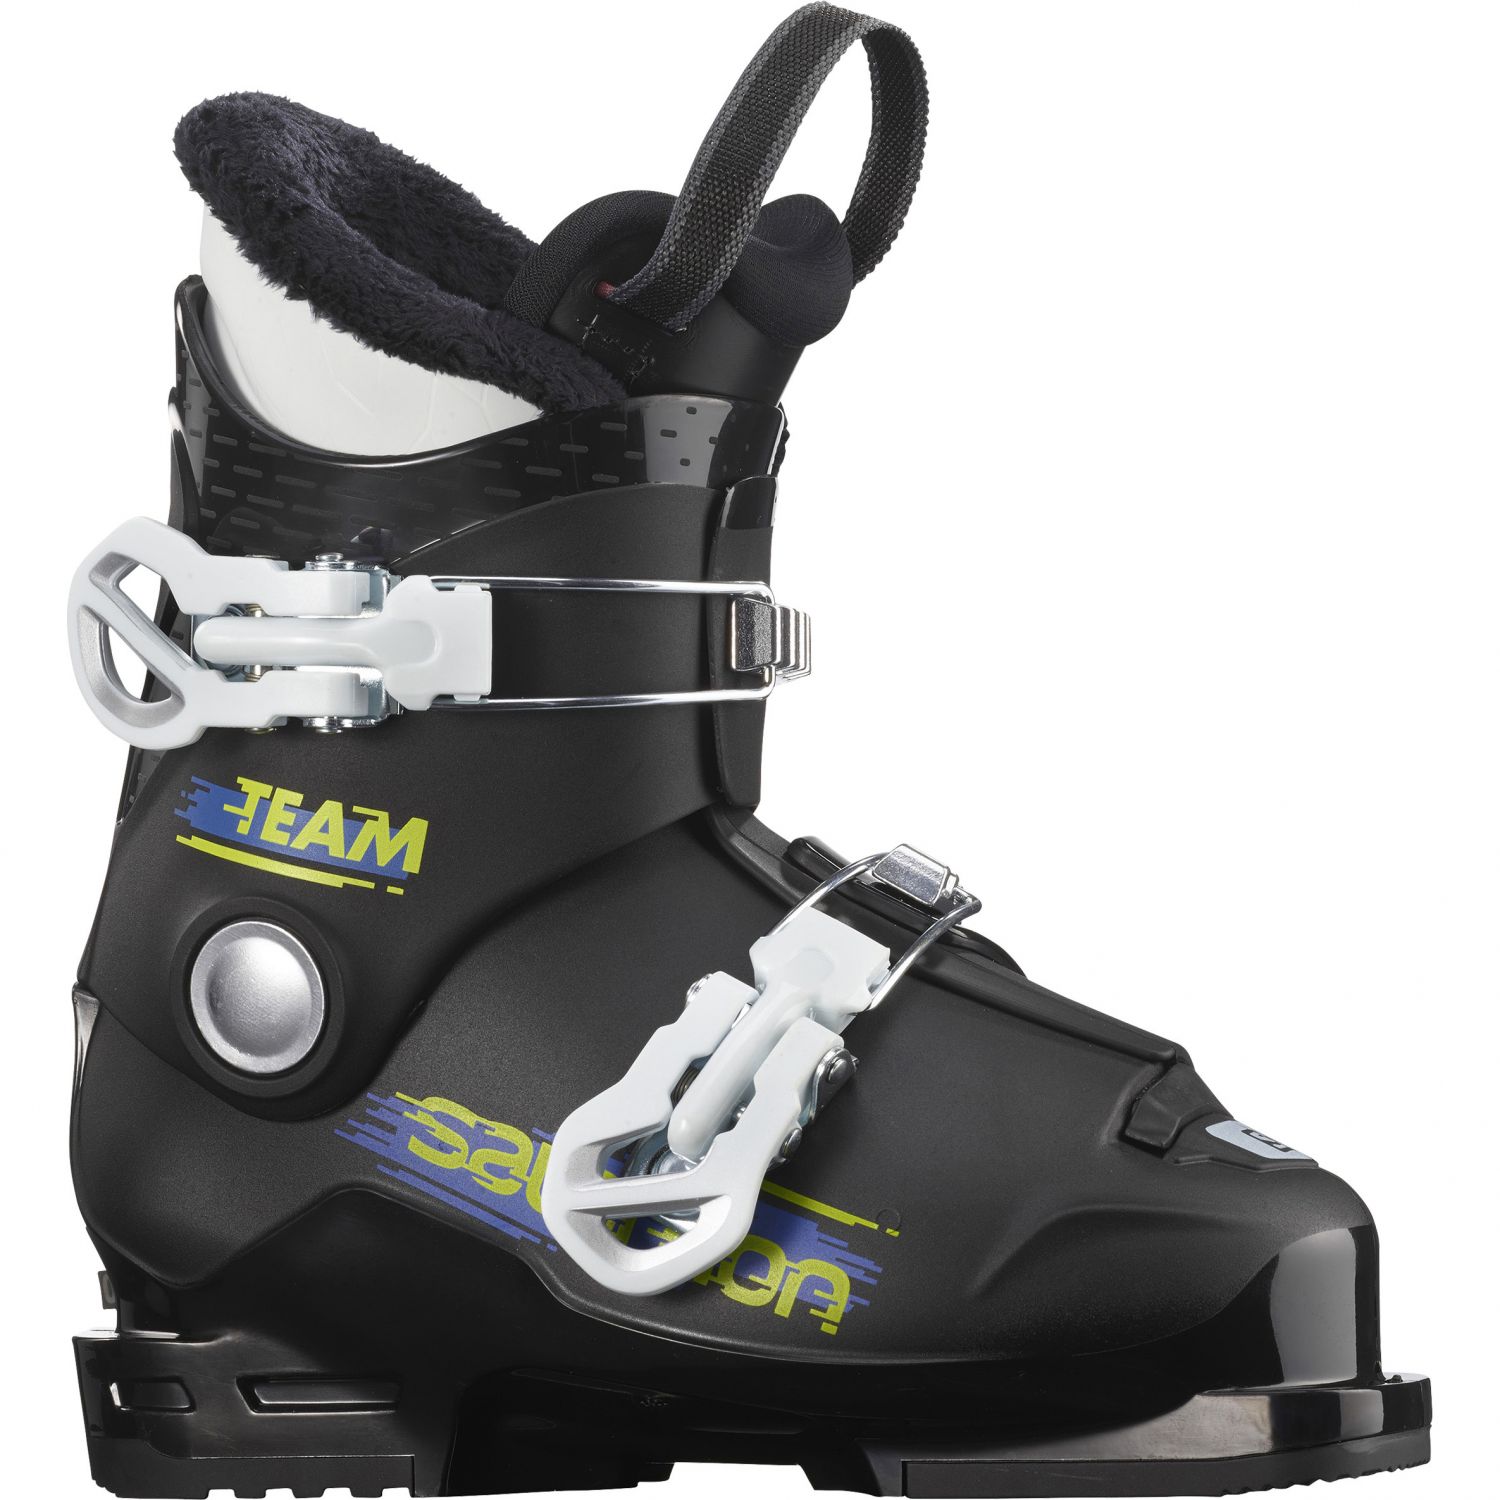 Salomon Team T2, skischoenen, junior, zwart/wit